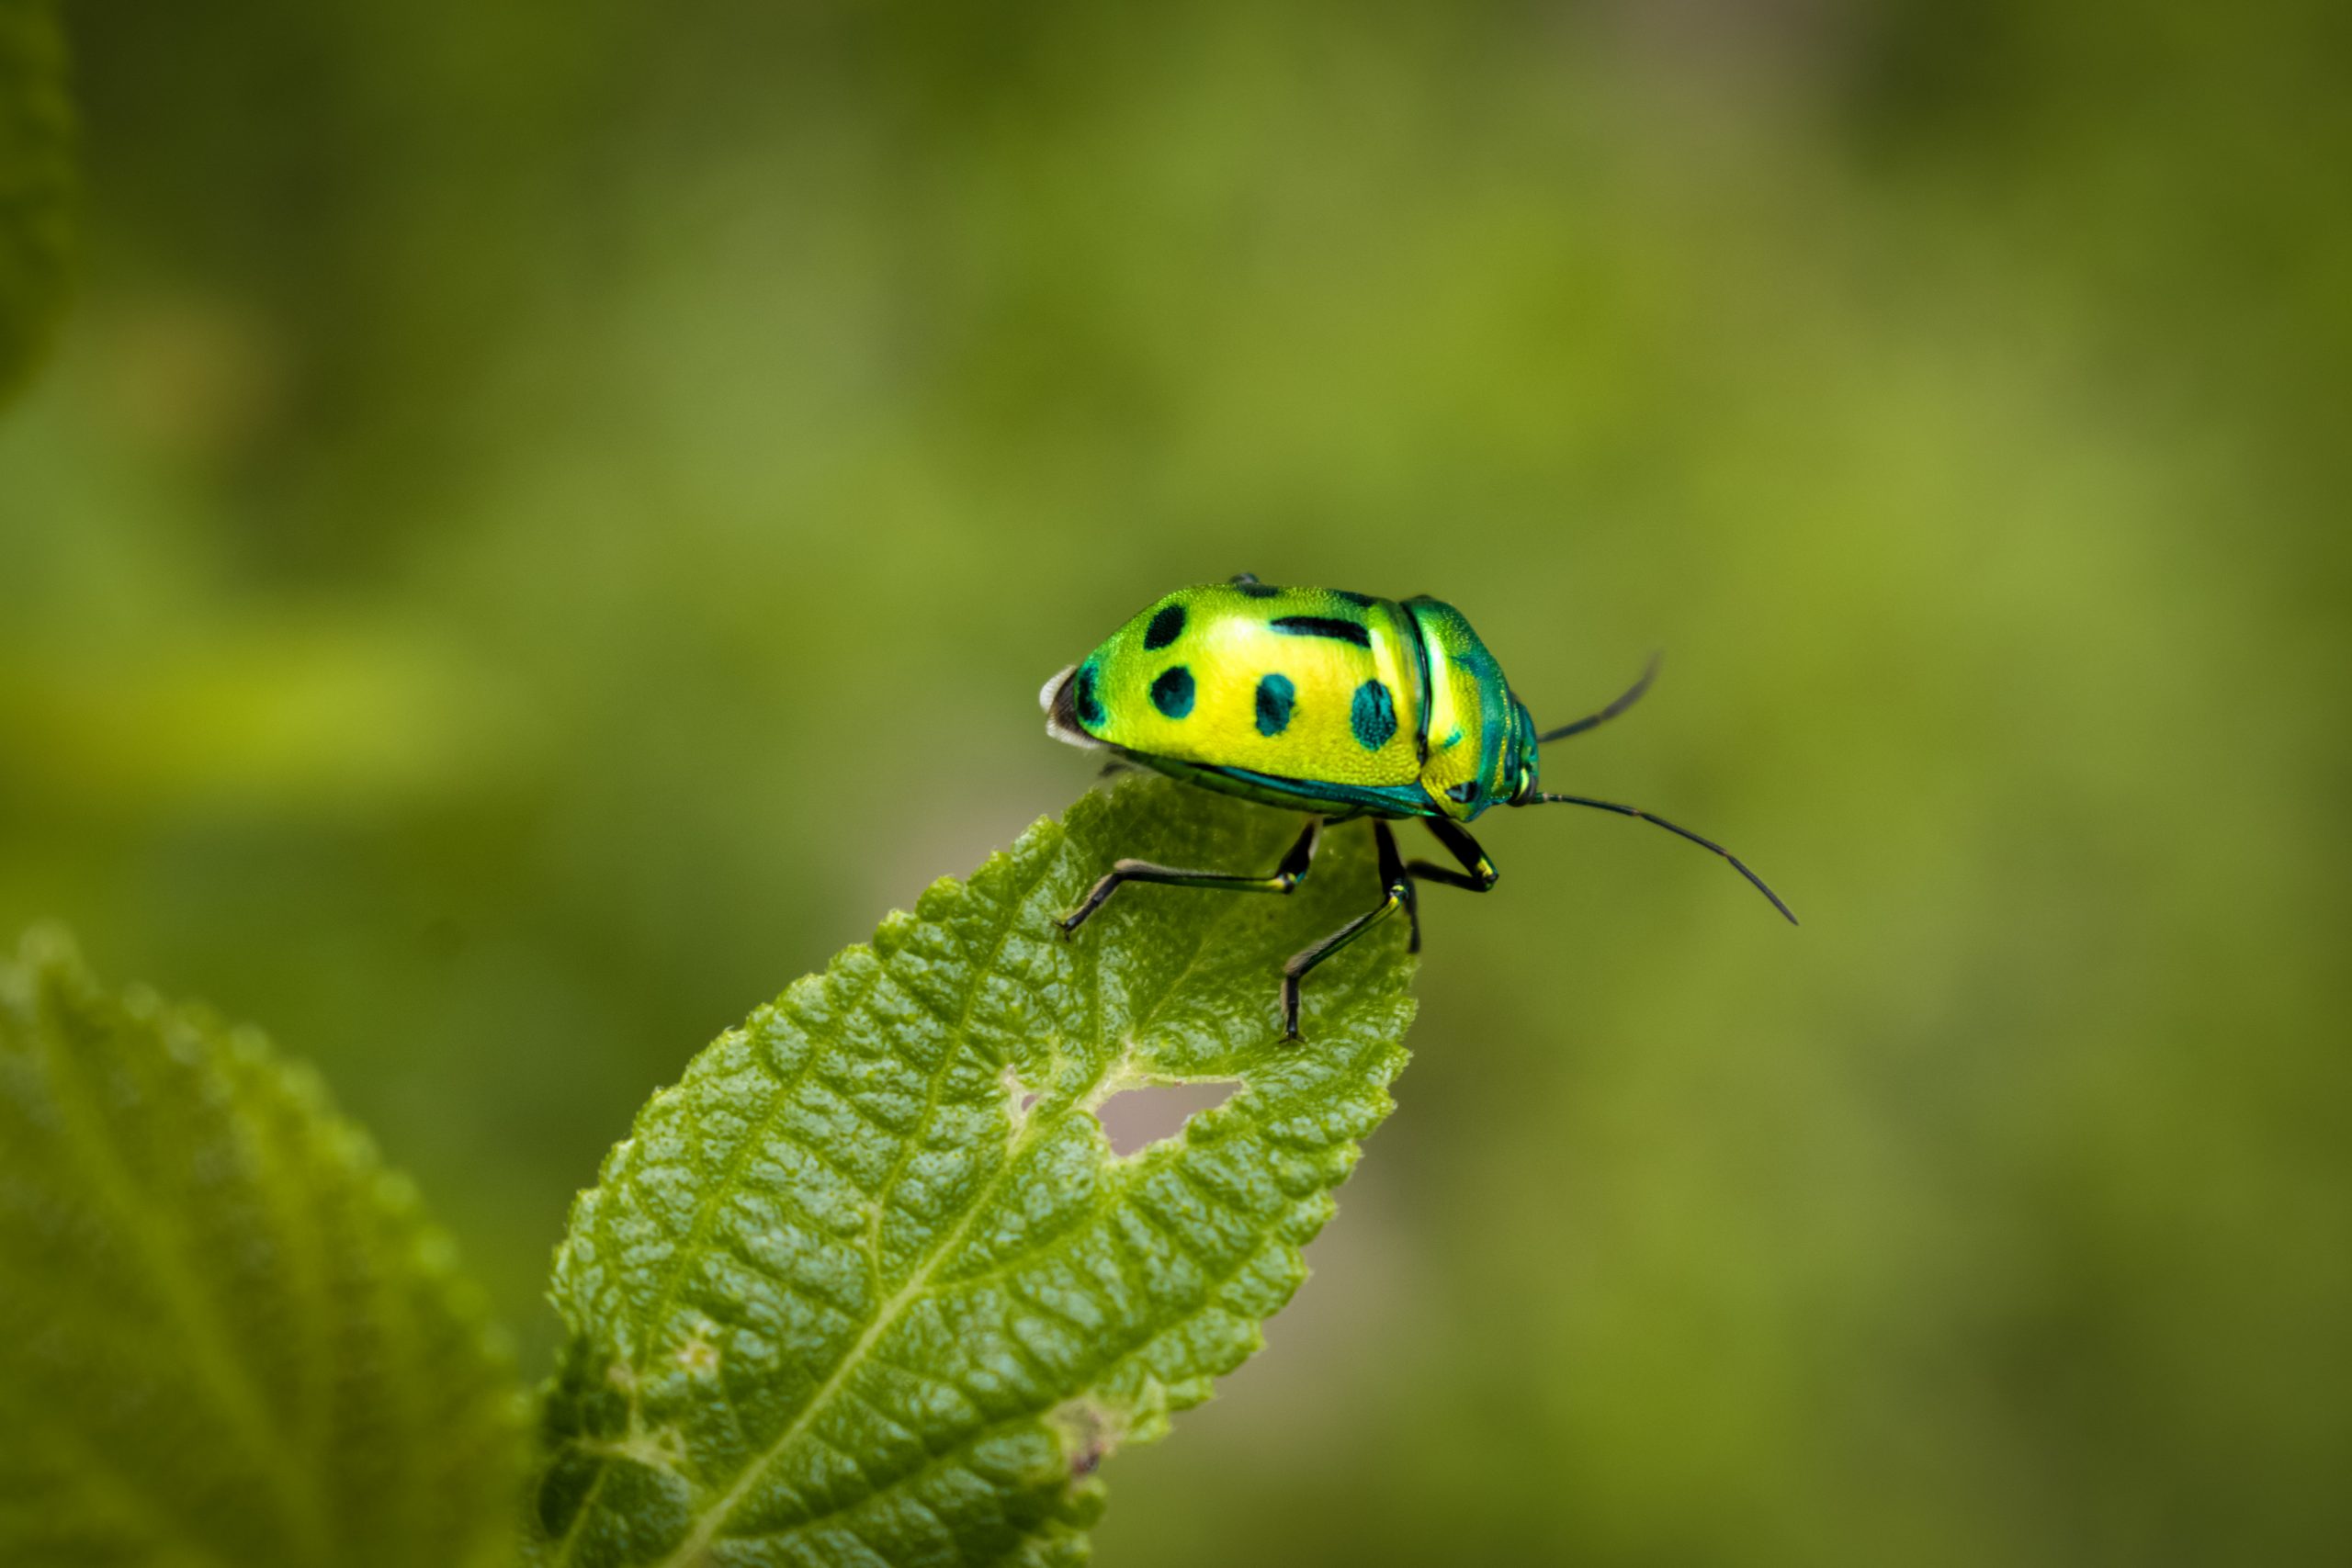 Green bug on a Leaf